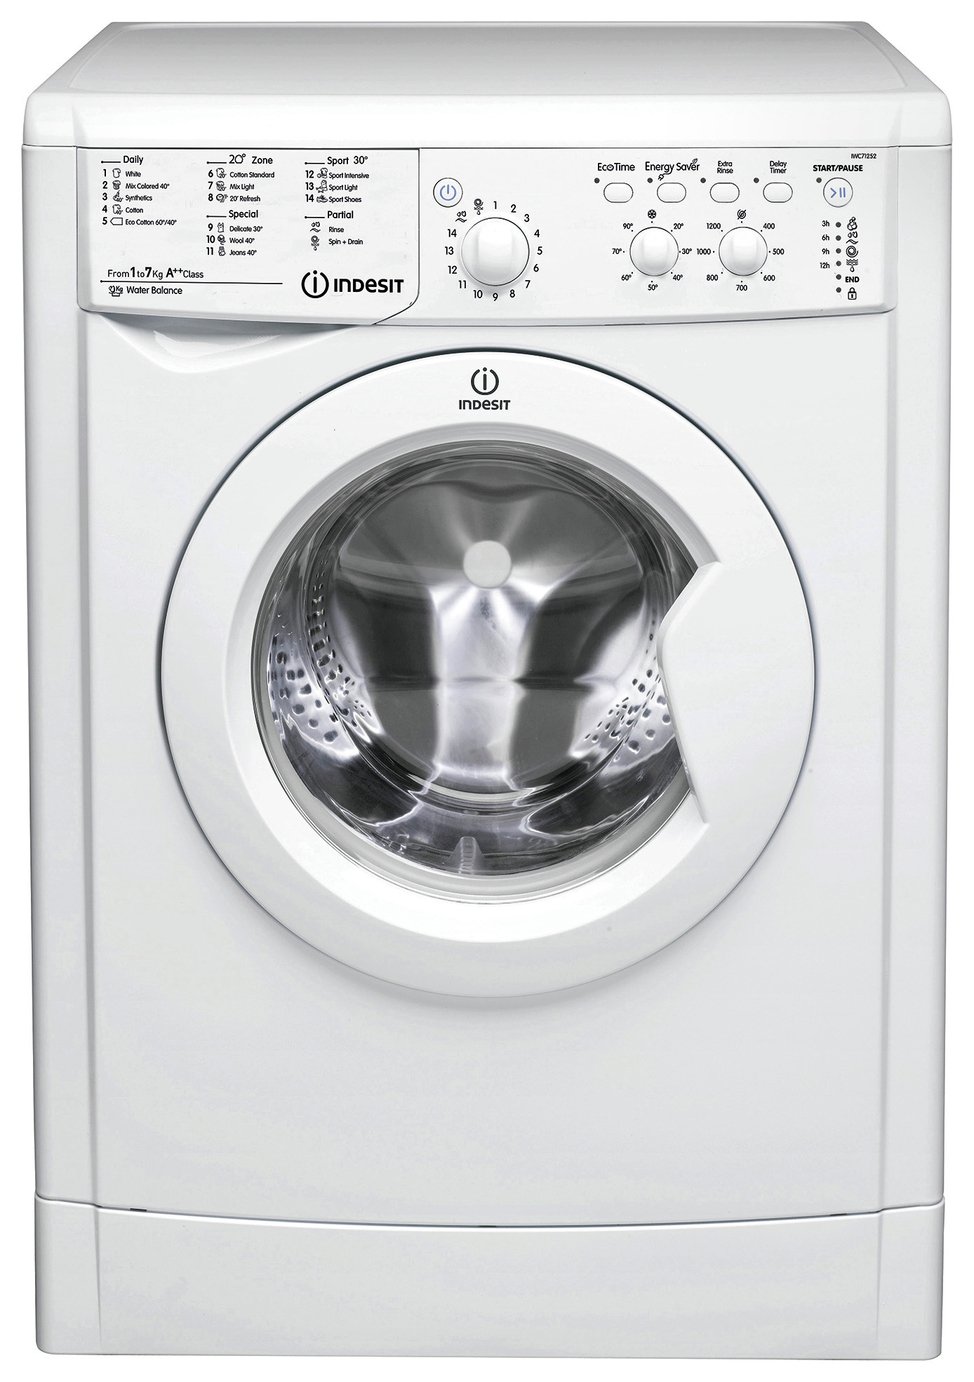 Indesit IWC71252 7KG Washing Machine Review